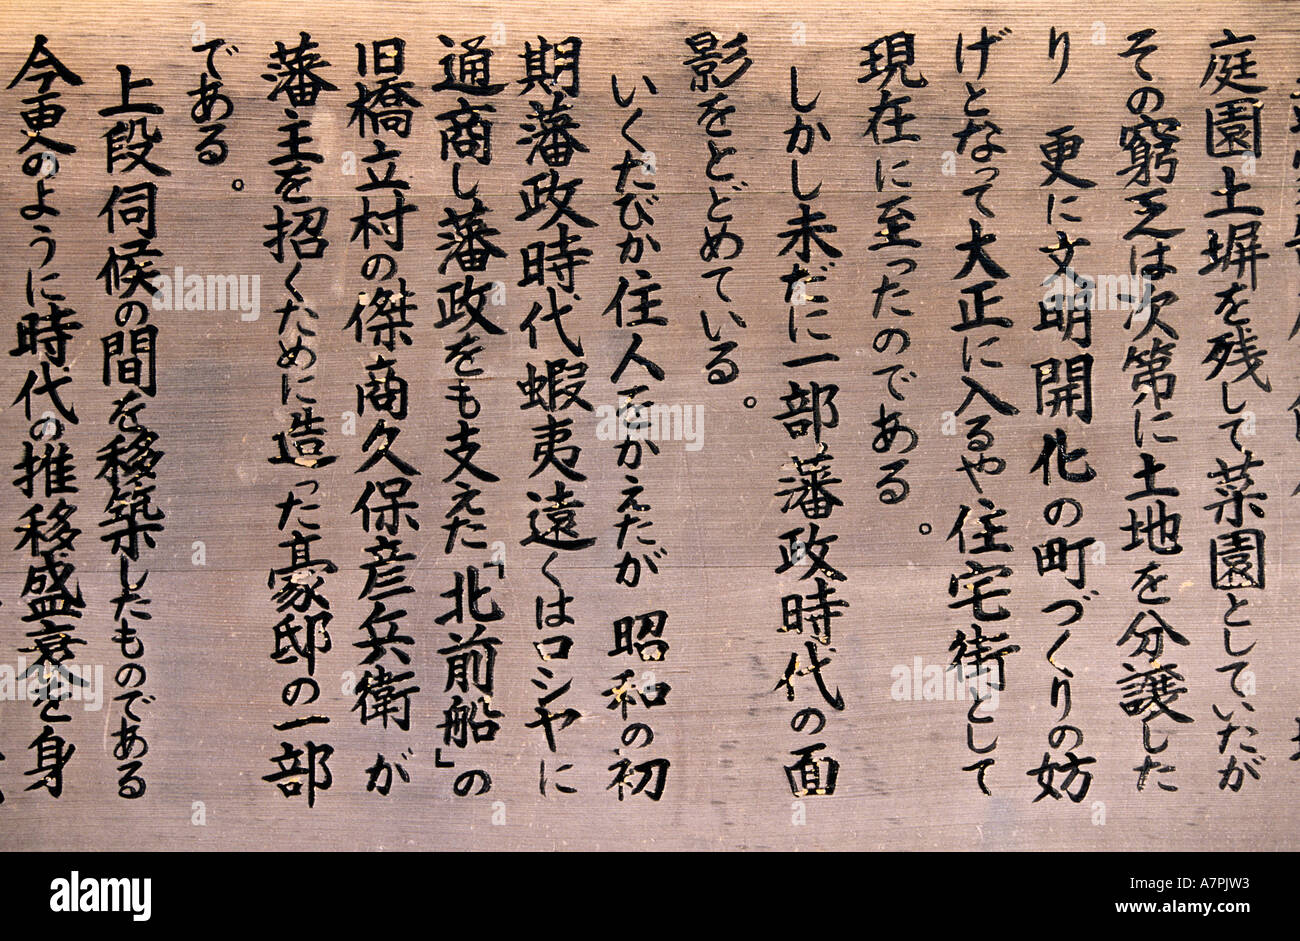 Le Japon, les kanjis japonais (écrit) Banque D'Images